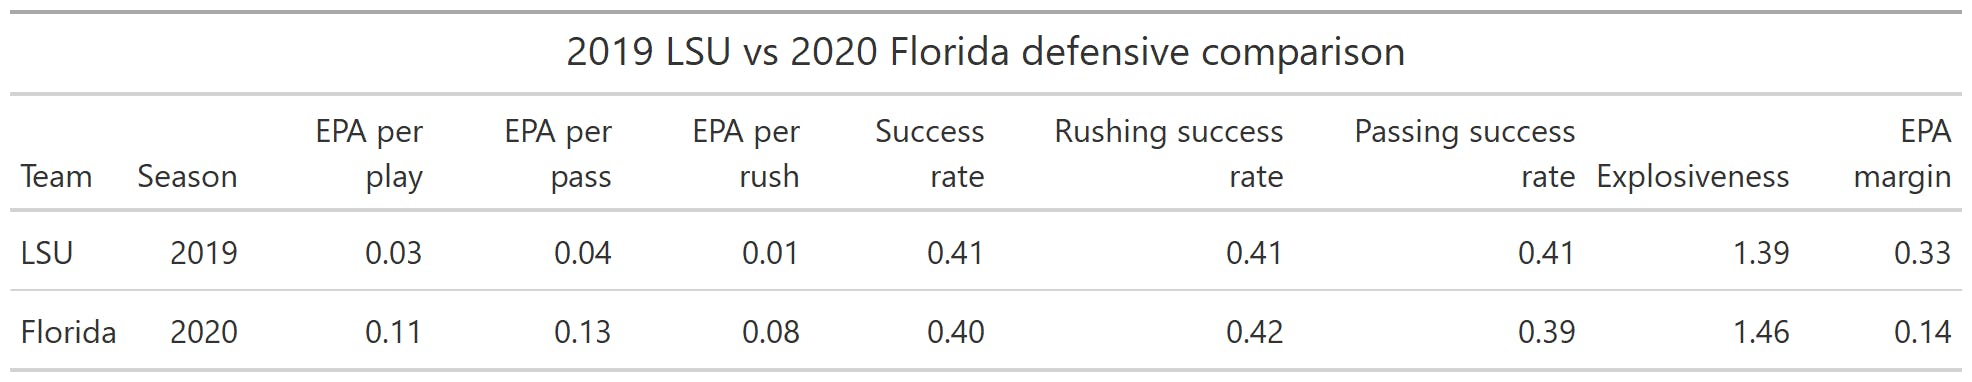 2019 LSU vs. 2020 Florida defensive comparison